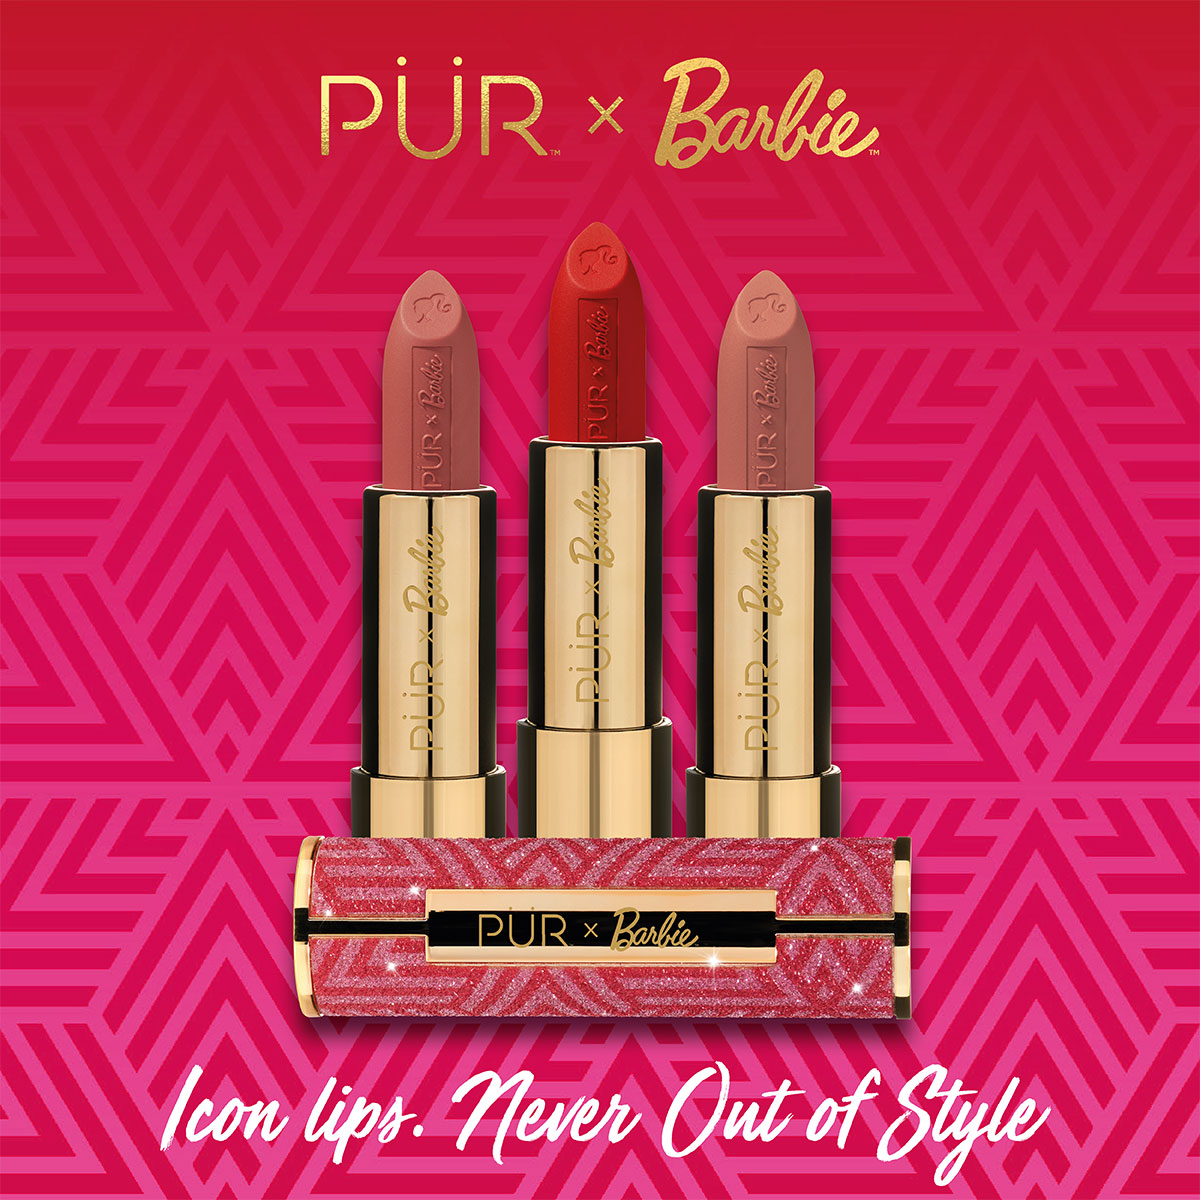 PUR X Barbie Iconic Lips Trailblazer rosa beige lppstift - Hairsale.se